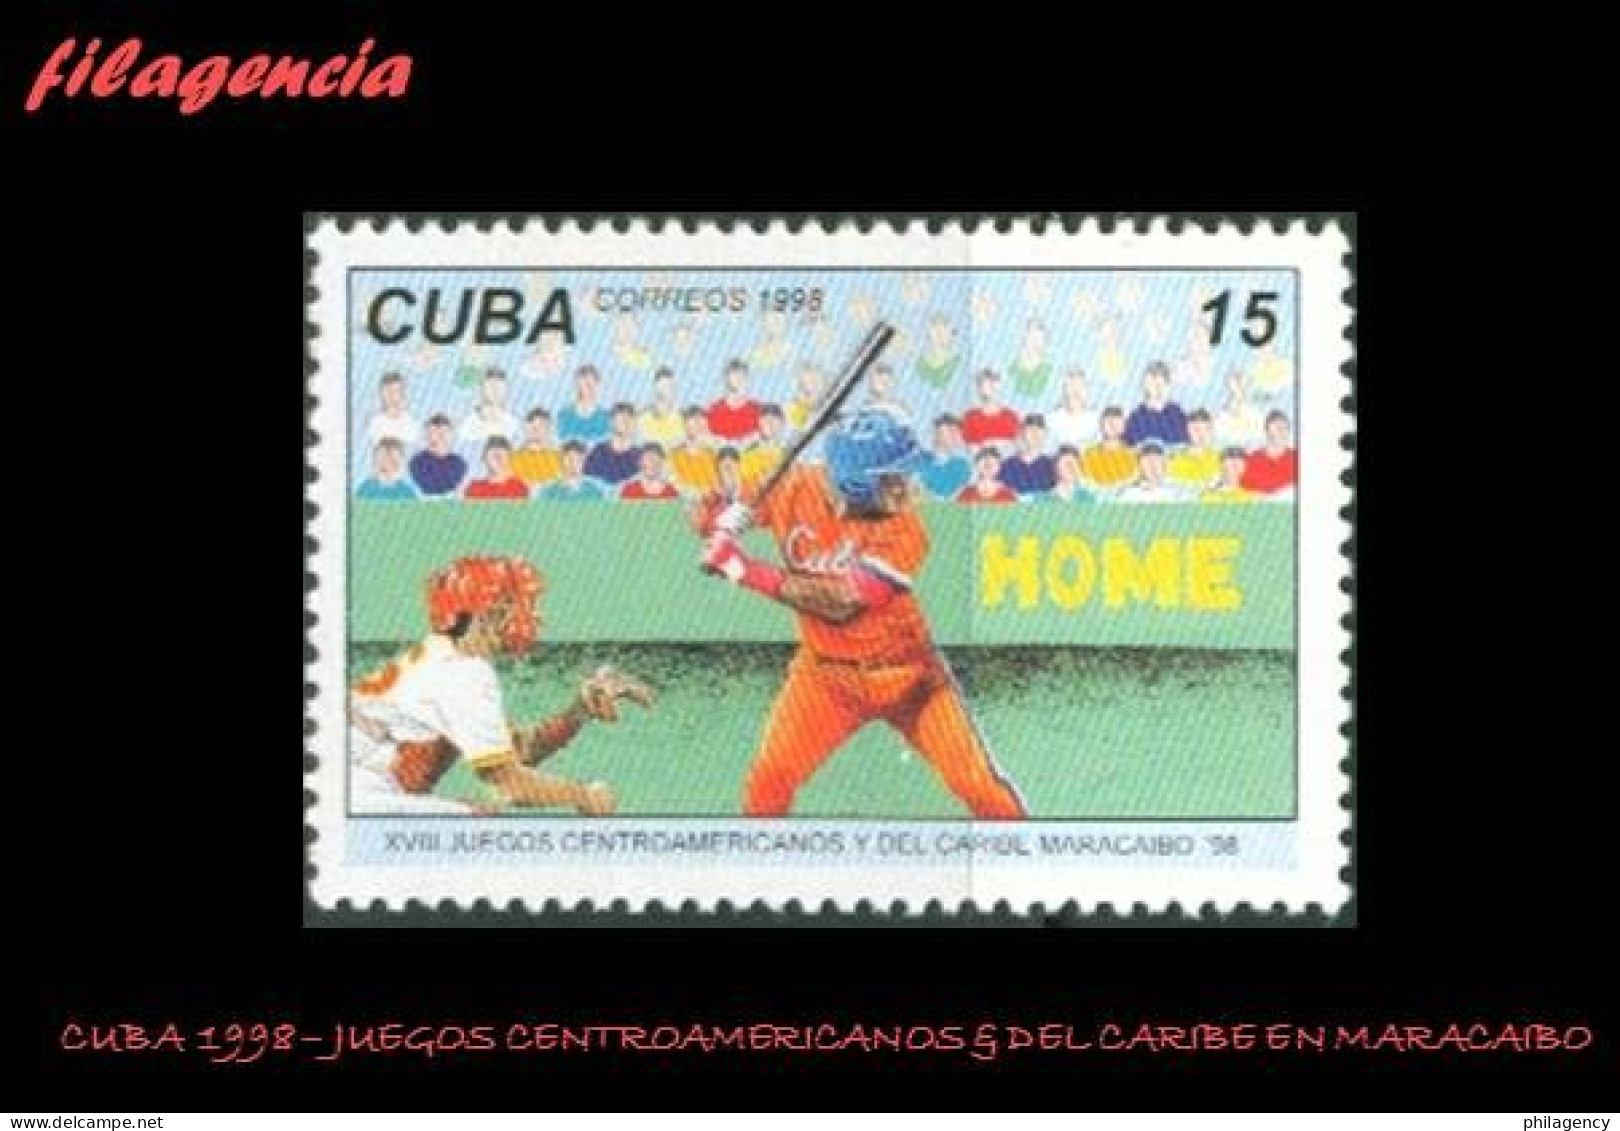 CUBA MINT. 1998-20 JUEGOS CENTROAMERICANOS & DEL CARIBE EN MARACAIBO - Unused Stamps